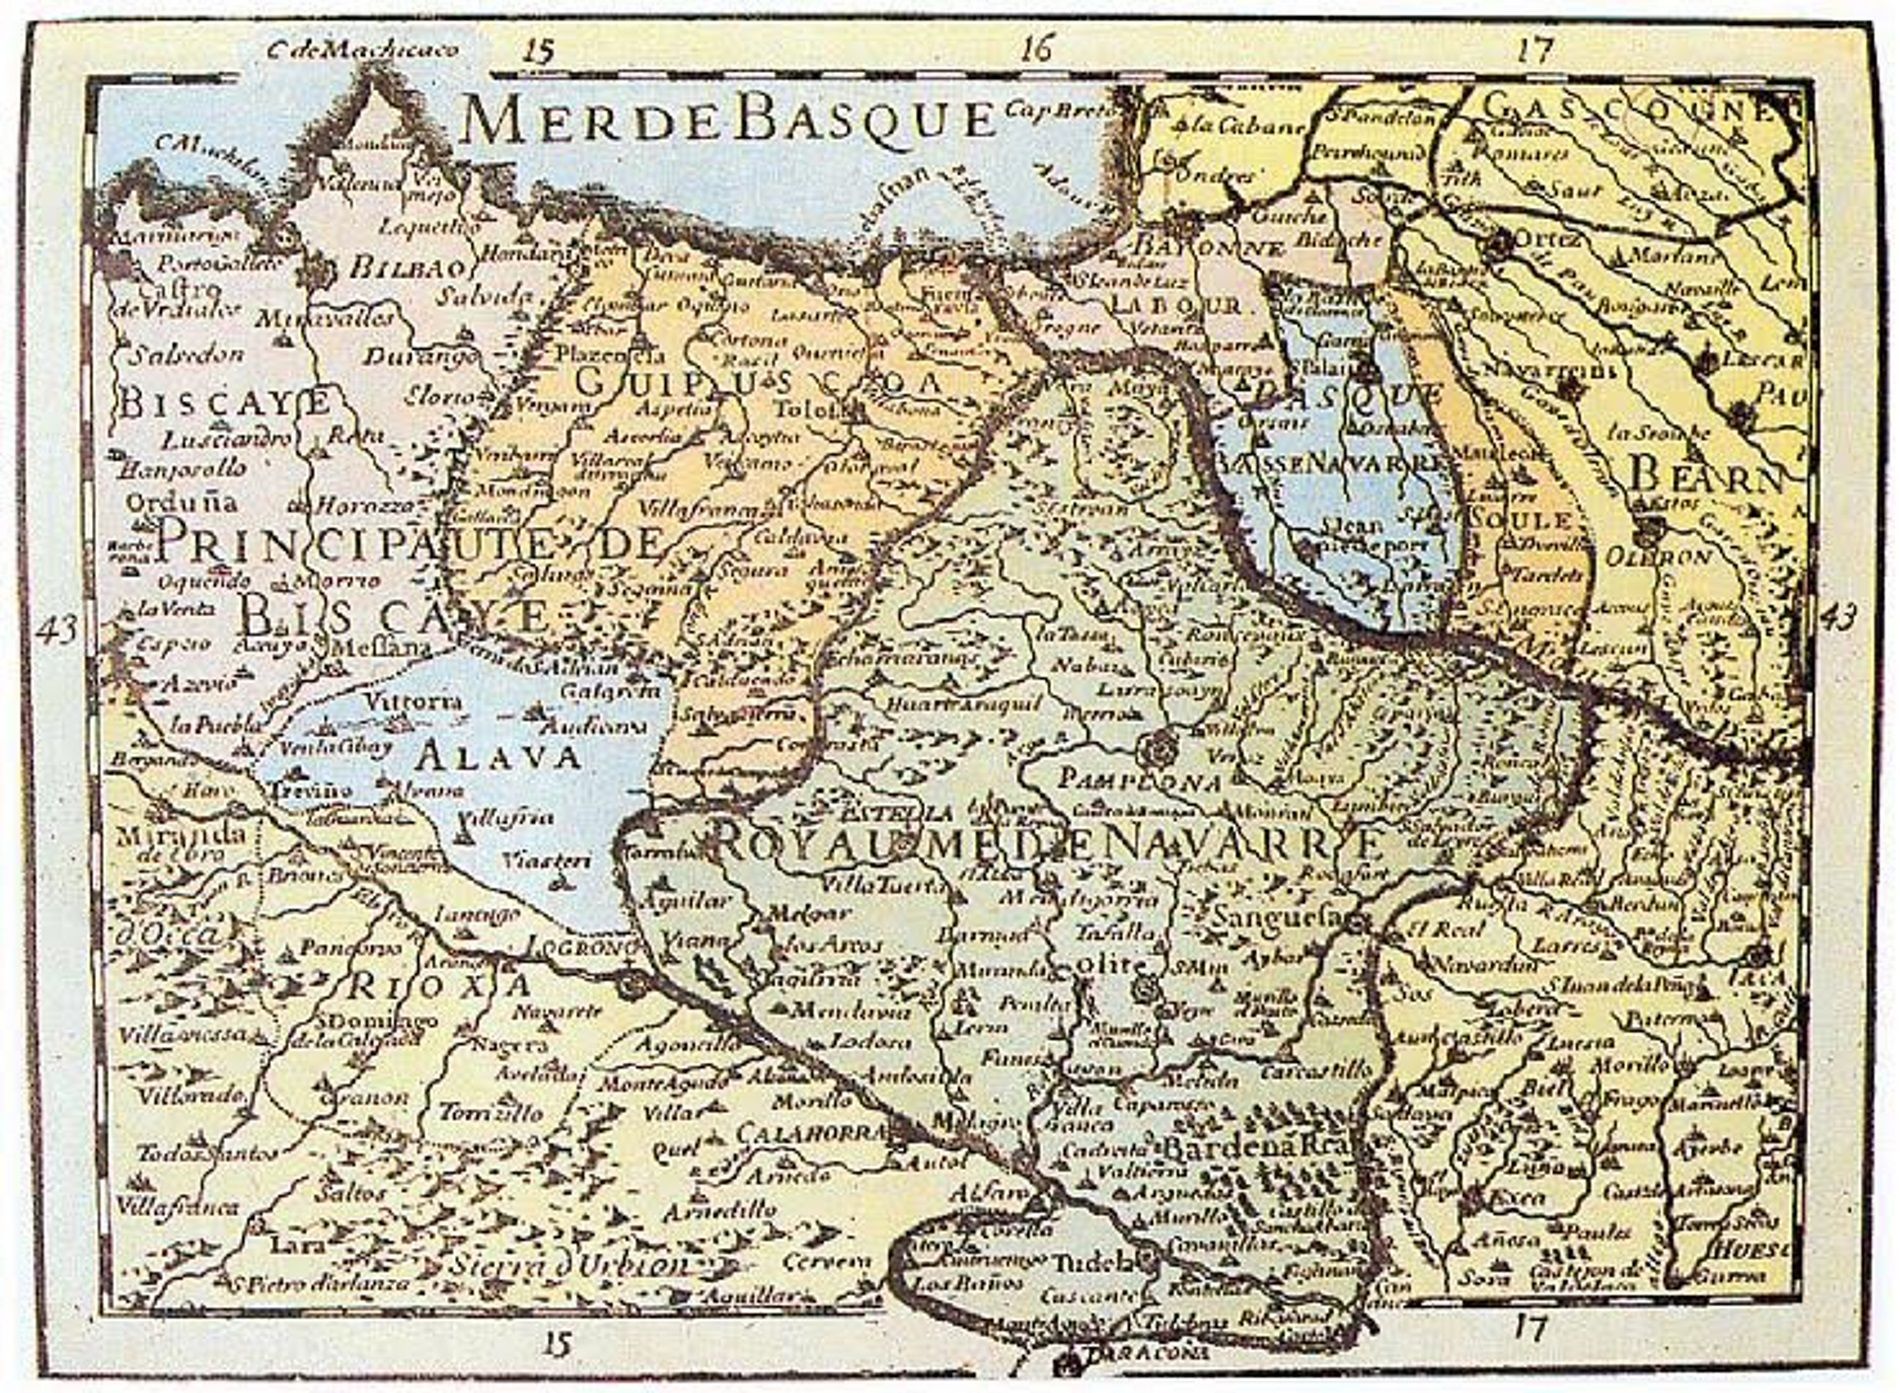 L'origen històric de la nació basca